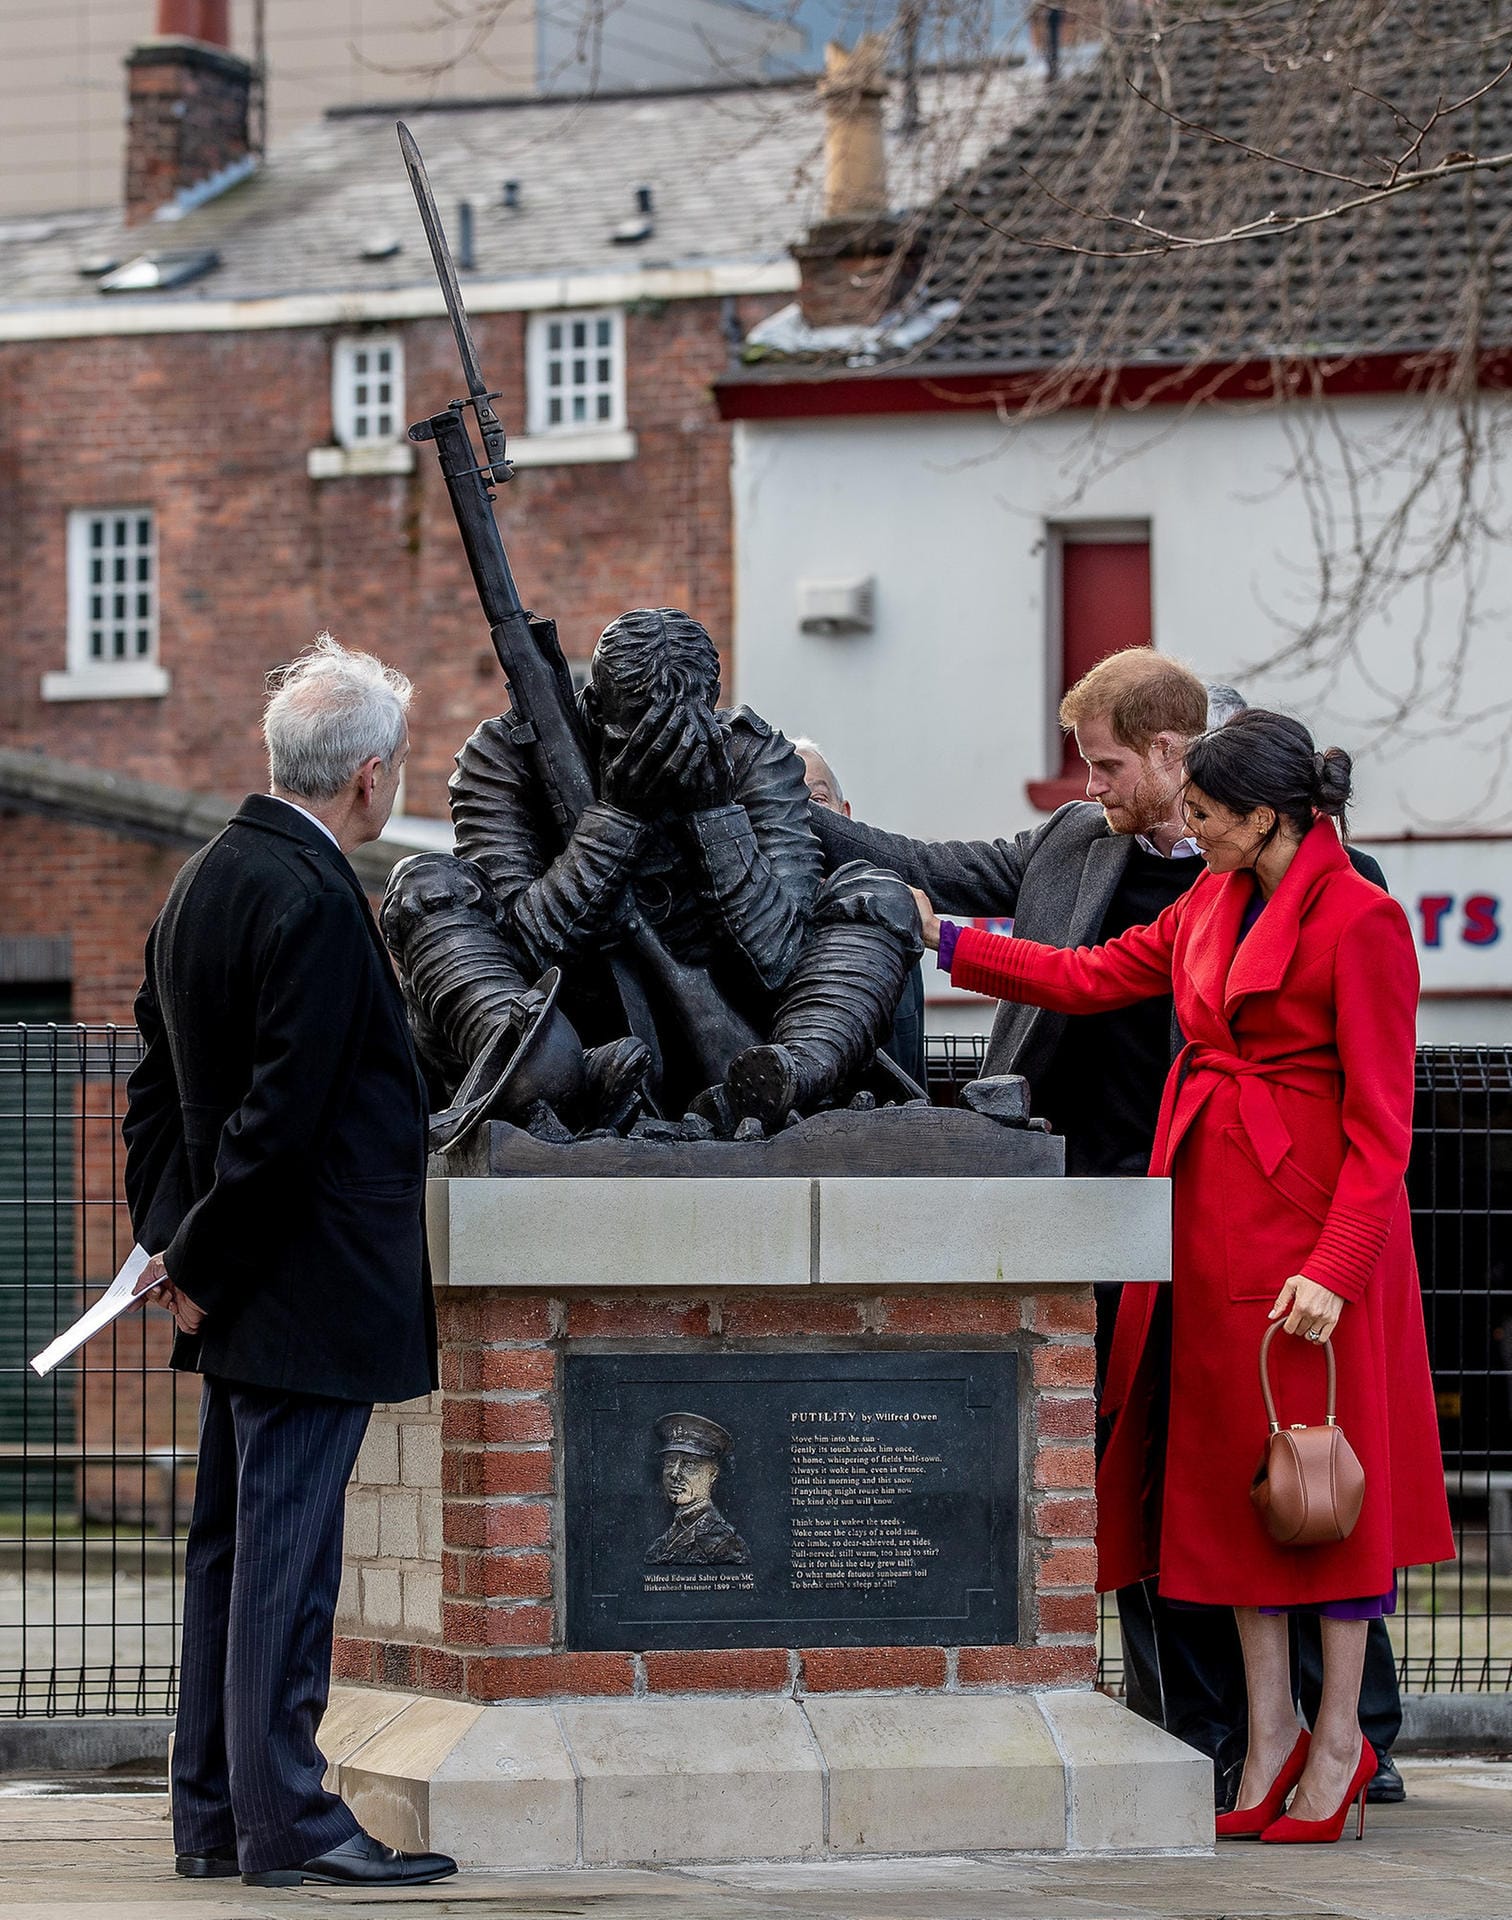 Gemeinsam schauten sie im Hamilton Square eine Skulptur an, die in Gedenken an den Kriegsdichter Wilfred Owen aufgestellt wurde.